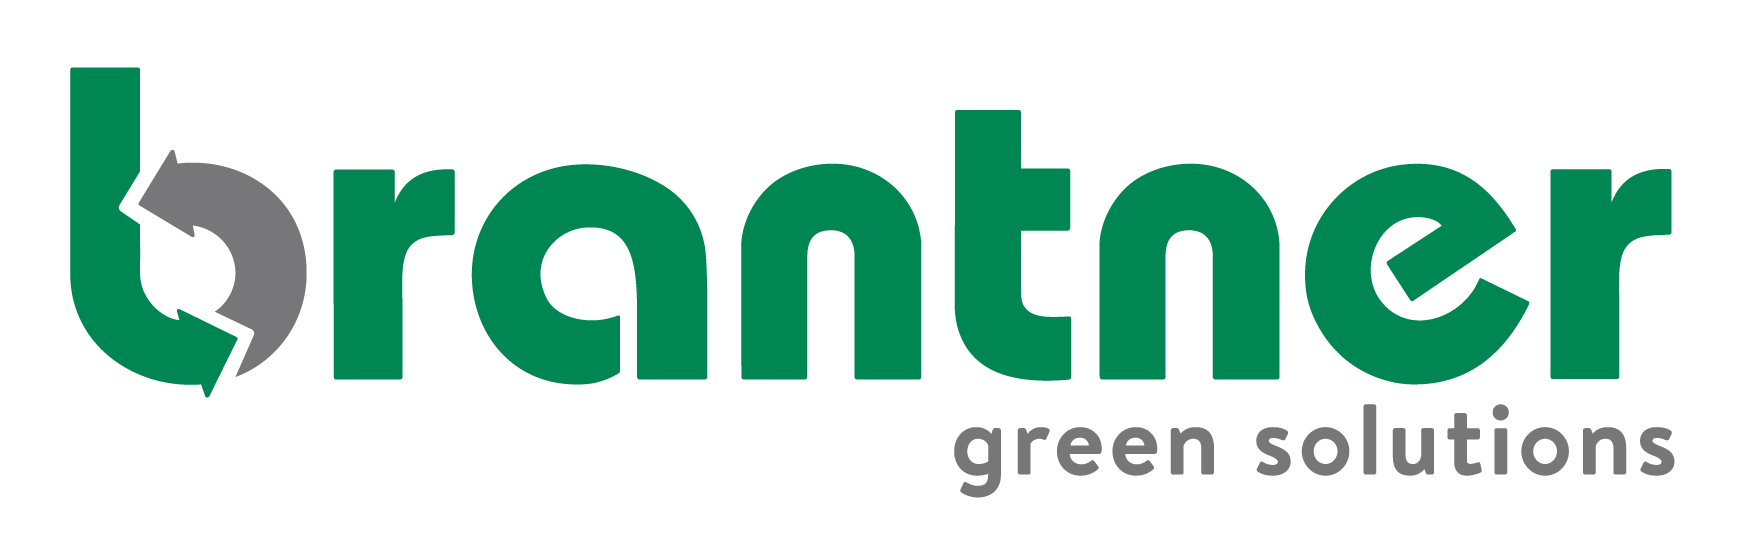 Brantner logo